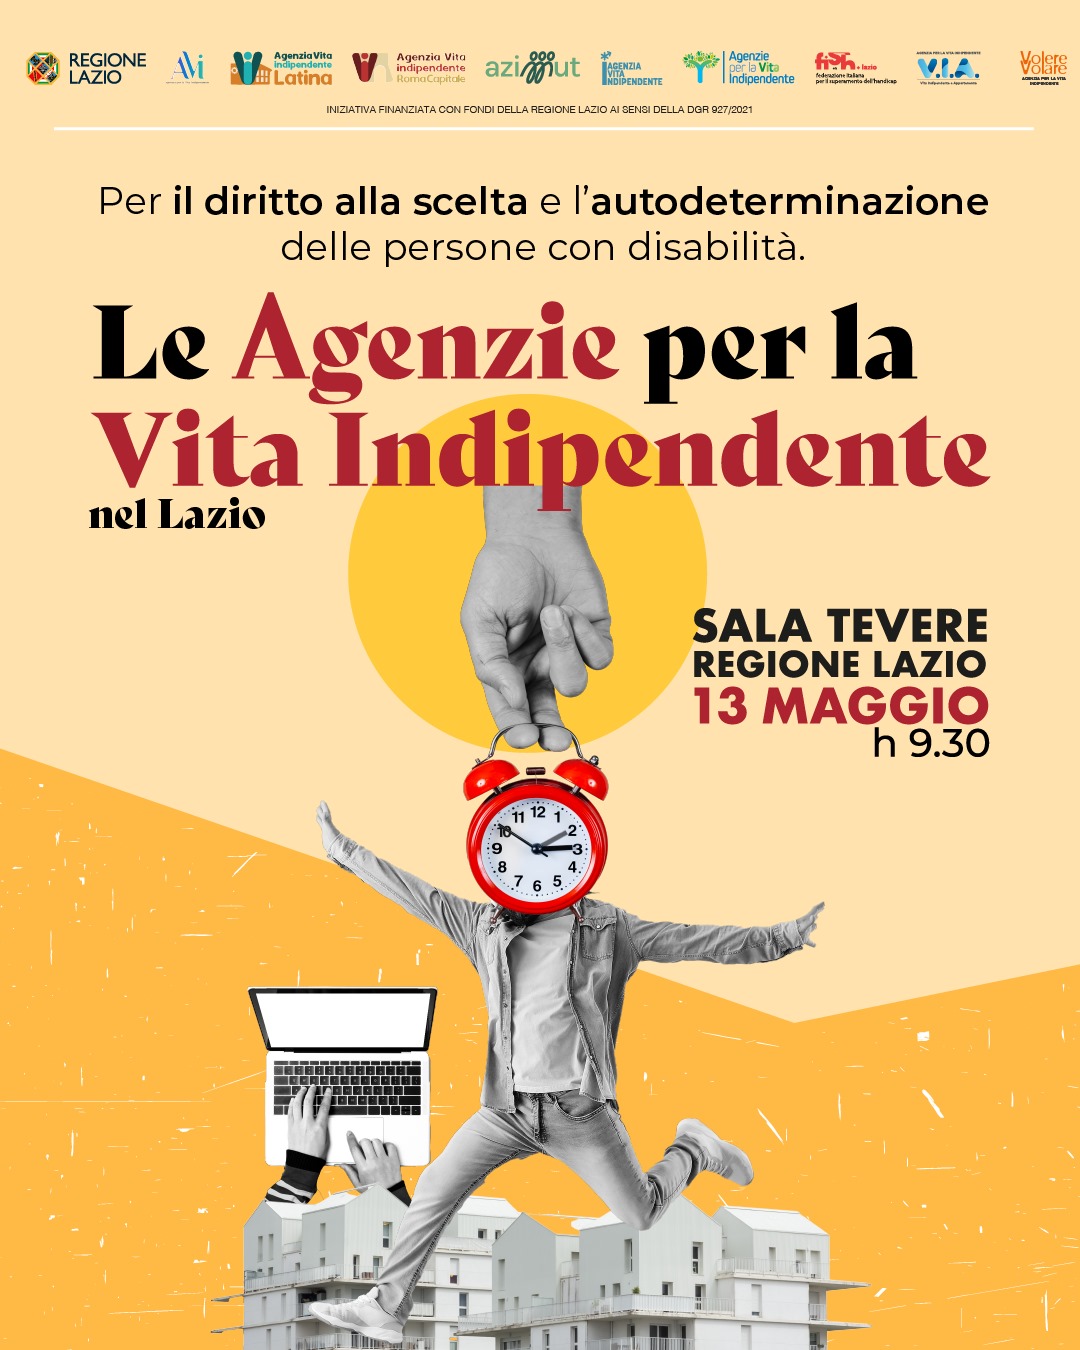 Agenzie per la Vita Indipendente nel Lazio 13 maggio